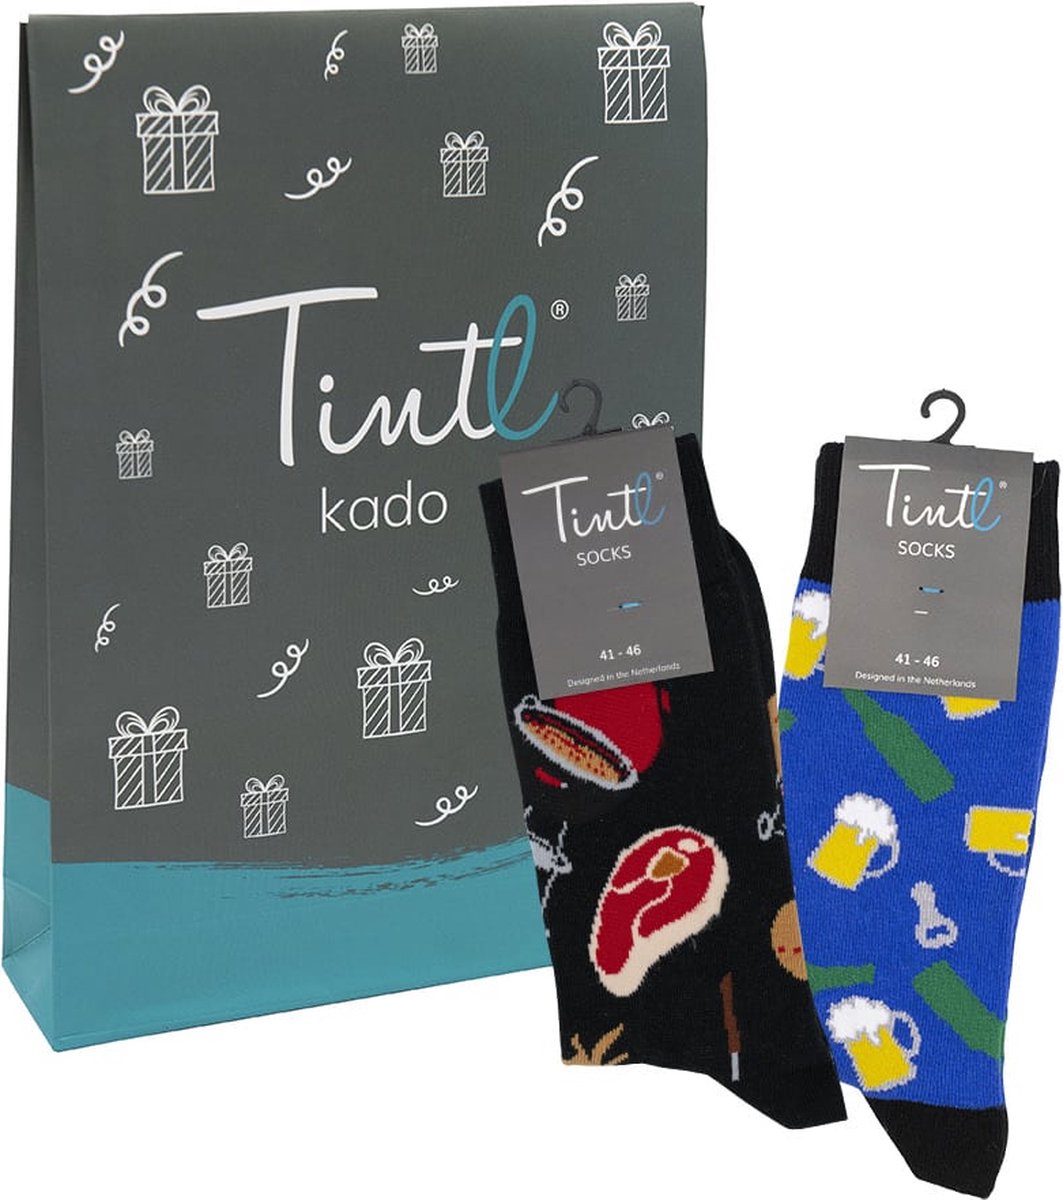 Tintl socks geschenkset unisex sokken | Duo - Man 1 (maat 41-46)